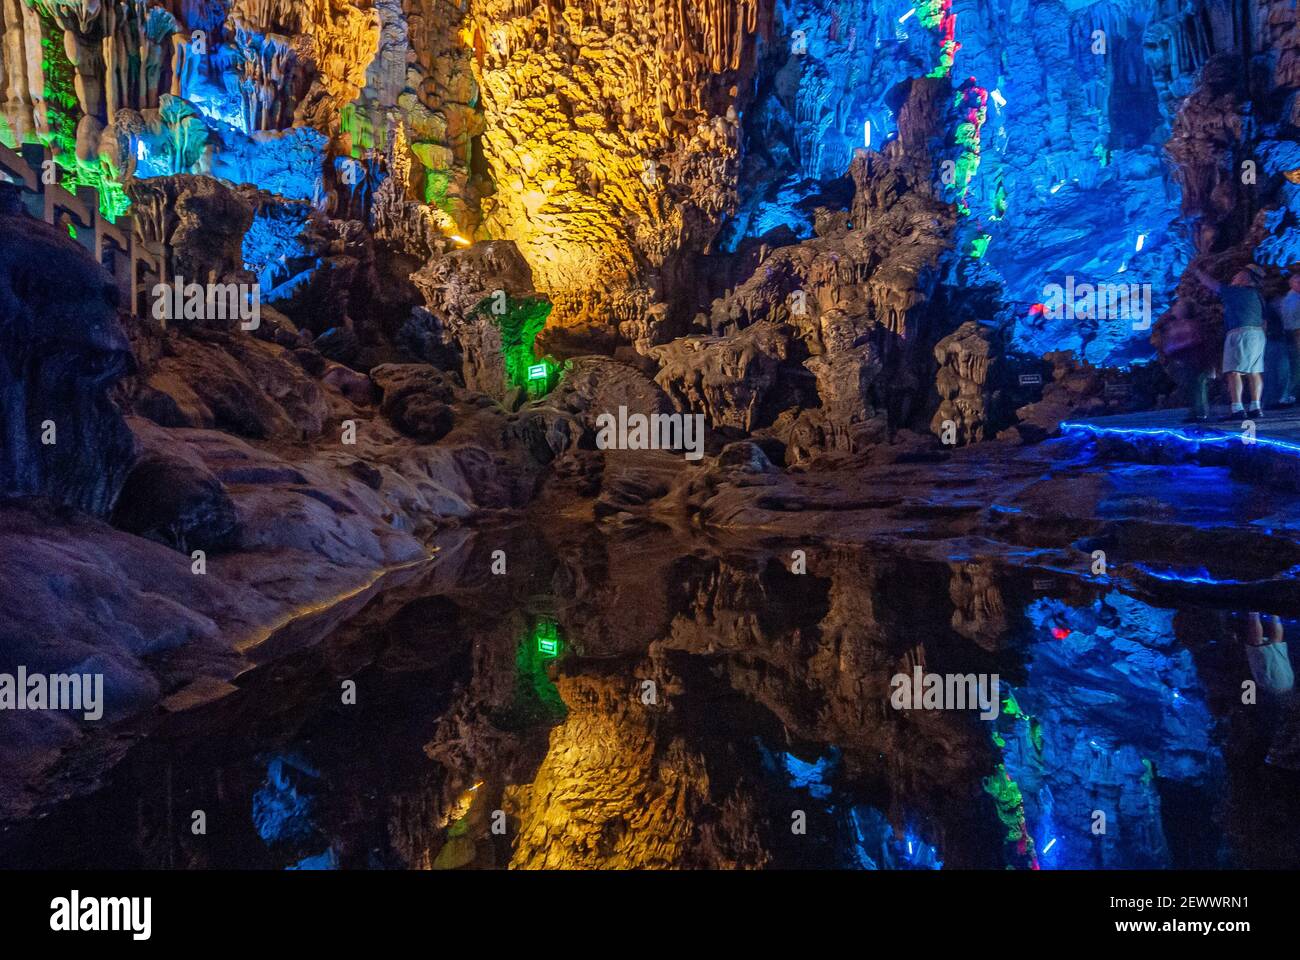 Guilin, China - 11. Mai 2010: Ludi Lu oder Reed Flute Cave. Blau beleuchteter Abschnitt der Grotte mit Stalaktiten und Stalagmiten. Reflektierender Teich vor. Stockfoto